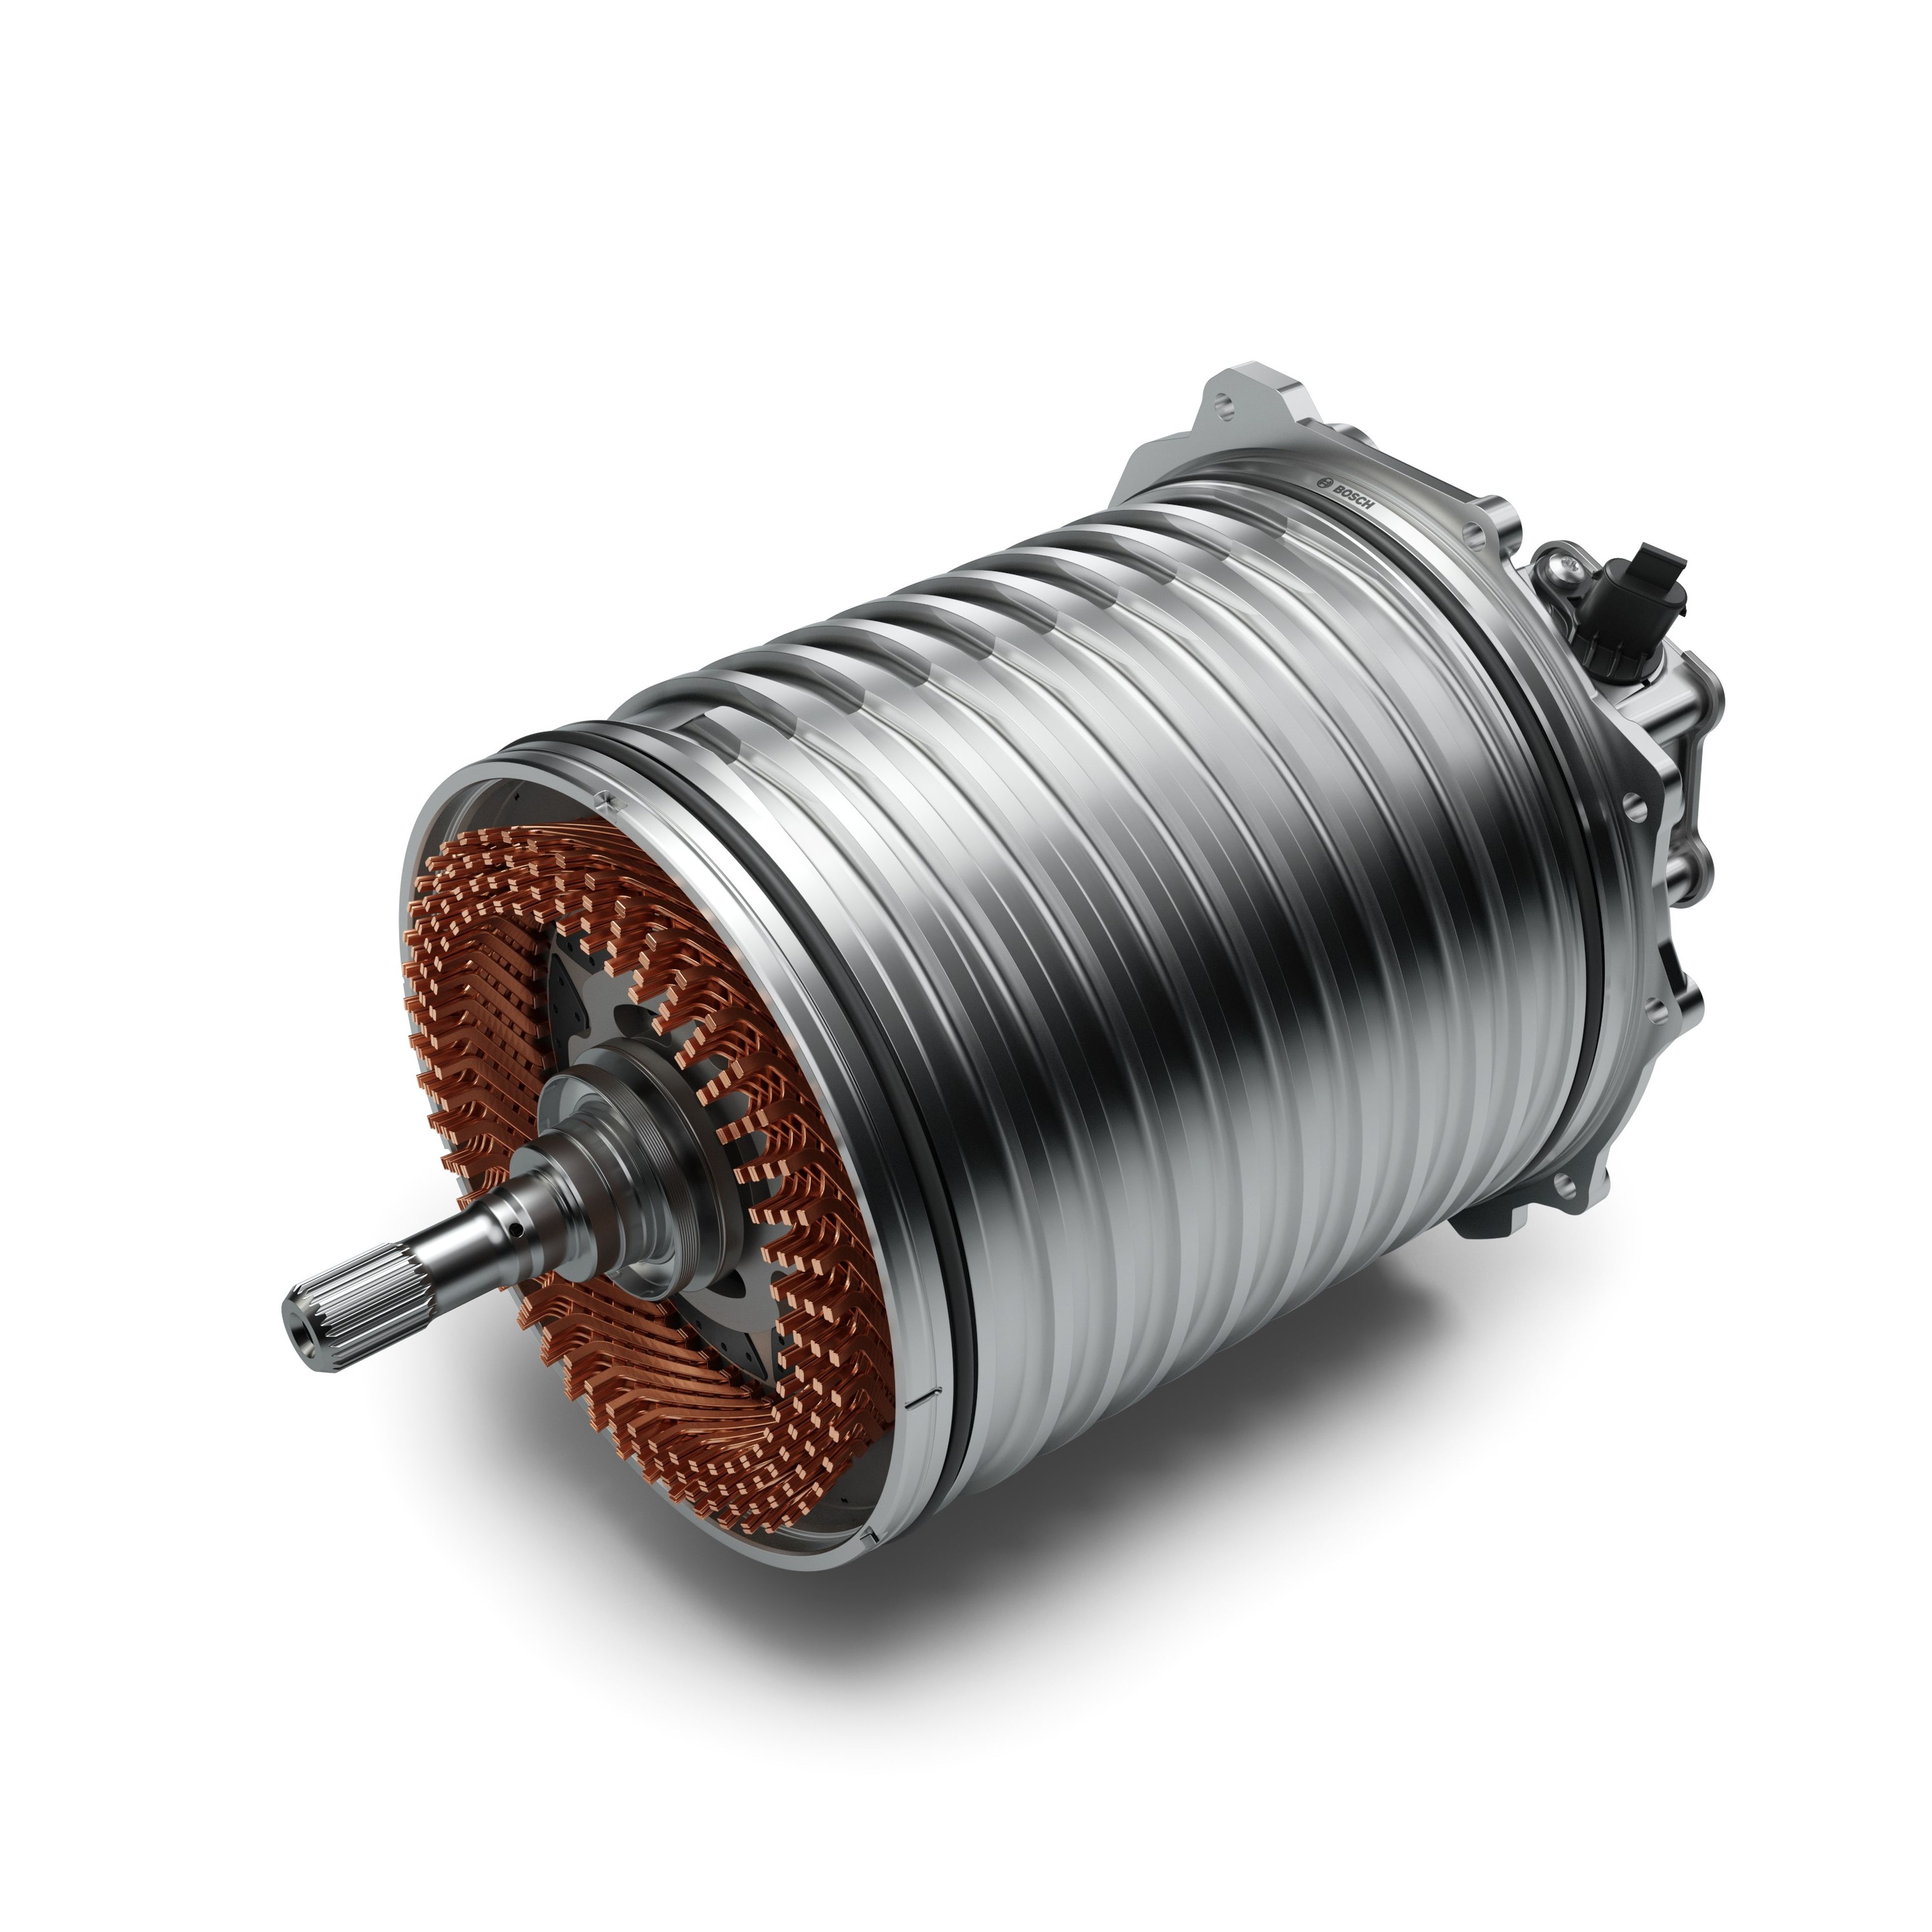 Parte del motor eléctrico de 800 V Bosch. Fuente: Bosch